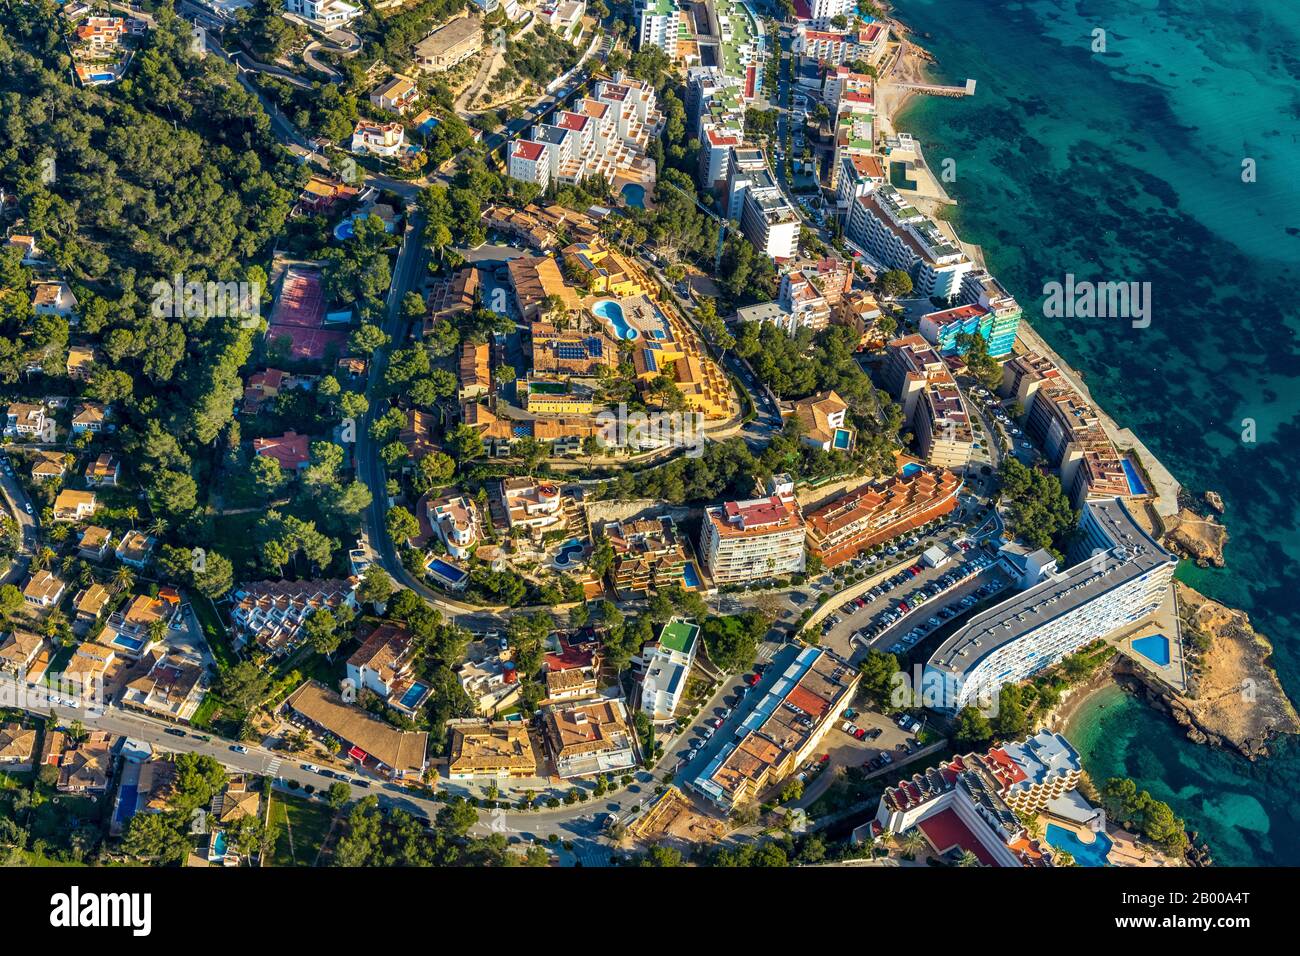 Vista aérea, complejo de apartamentos de vacaciones César, bahía de Santa Ponsa, Santa Ponsa, Calvià, Mallorca, España, Europa, Islas Baleares, apartamentos, es, Foto de stock